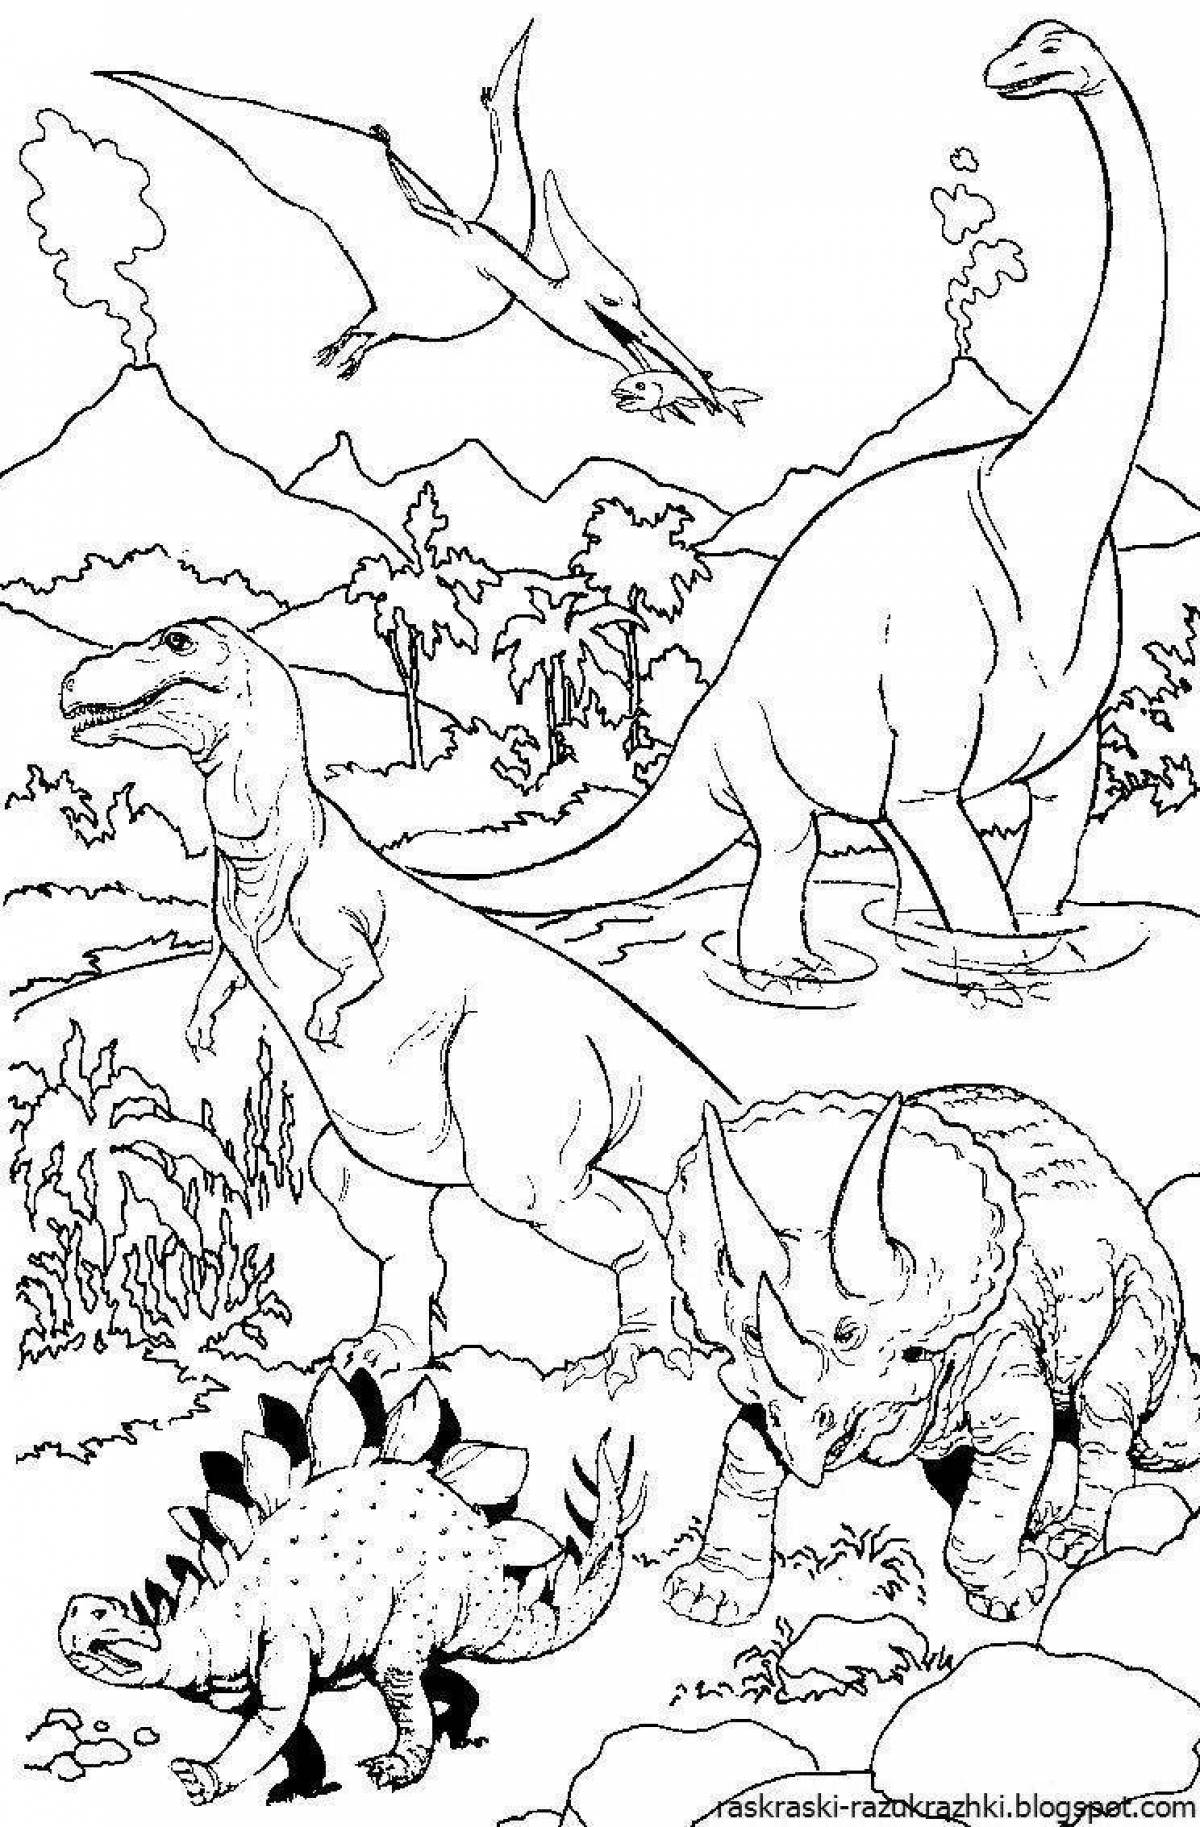 Прекрасная раскраска динозавров для девочек